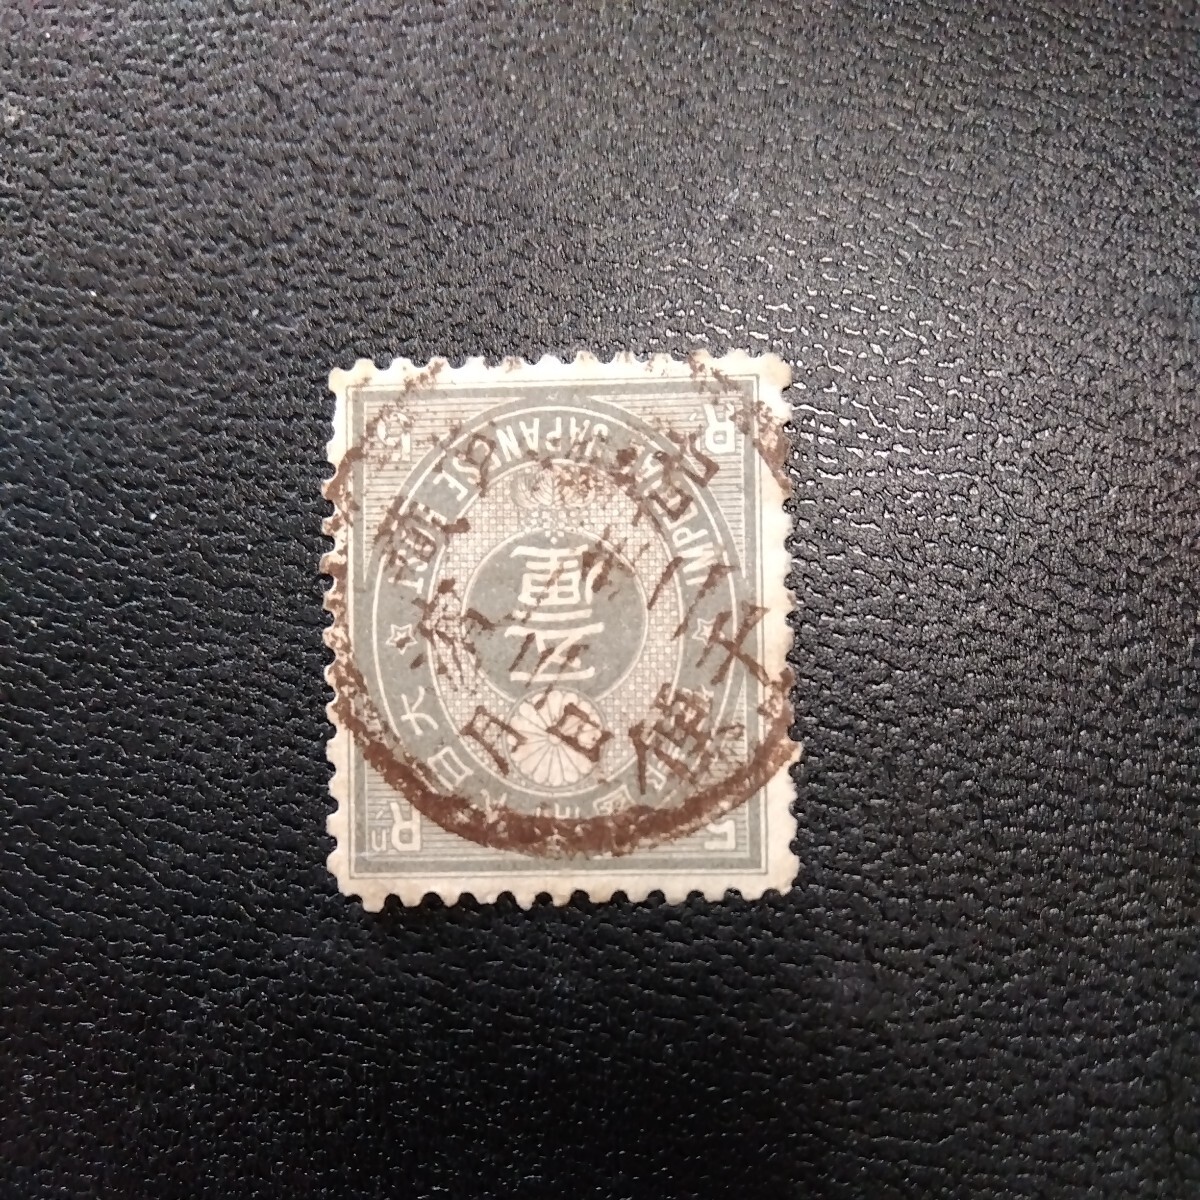 旧小判切手5厘。丸一型日付印あり。武蔵横濱満月印。美品。_画像1